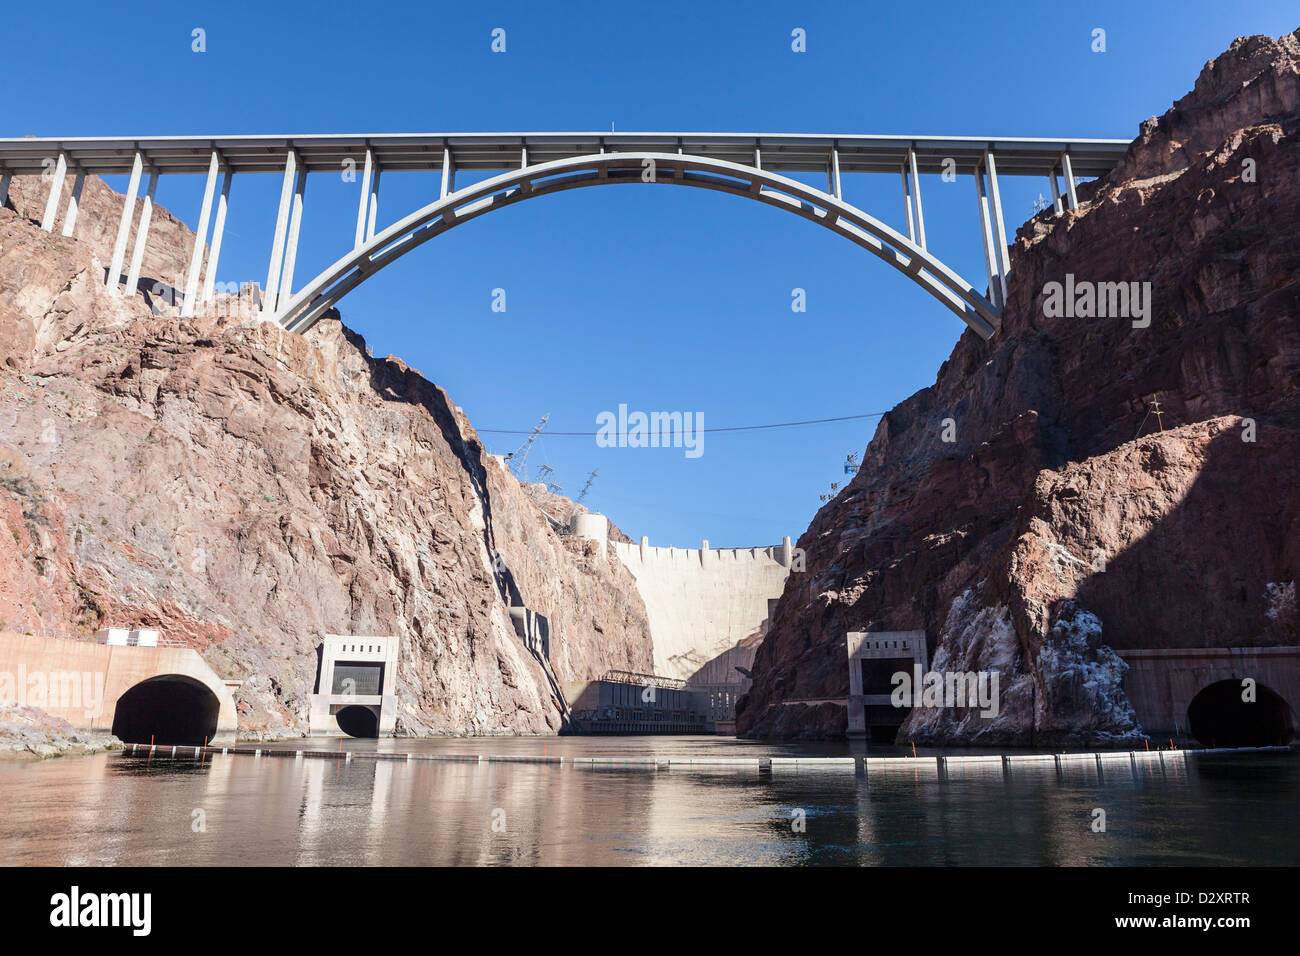 Di seguito lo storico della Diga di Hoover e il ponte sul fiume Colorado. Foto Stock